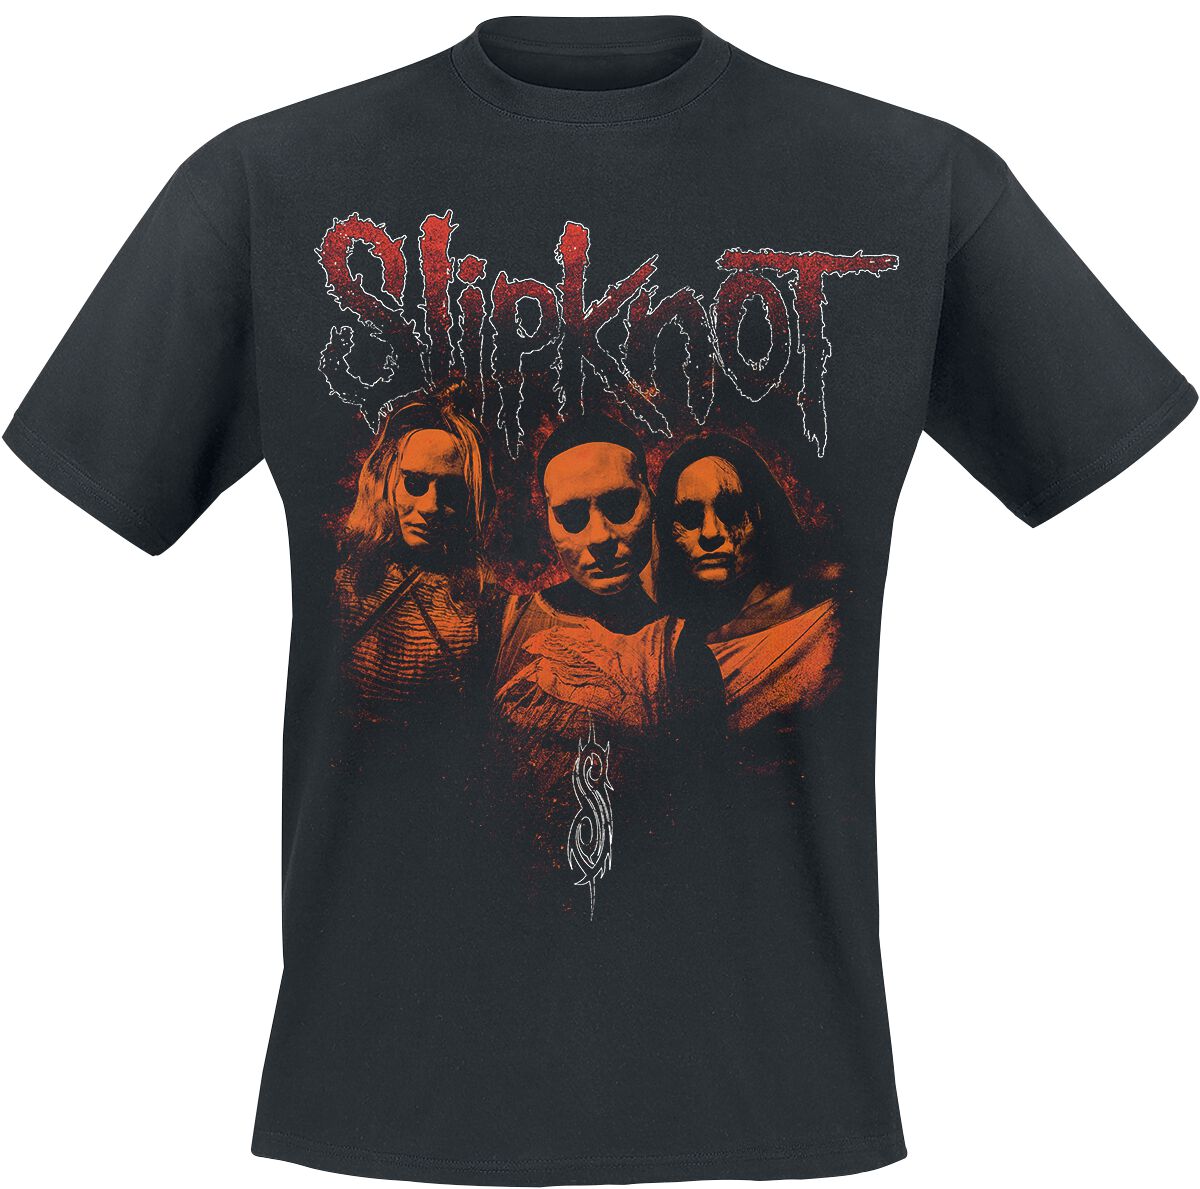 Slipknot T-Shirt - When My Death Begins - S bis XL - für Männer - Größe M - schwarz  - Lizenziertes Merchandise!